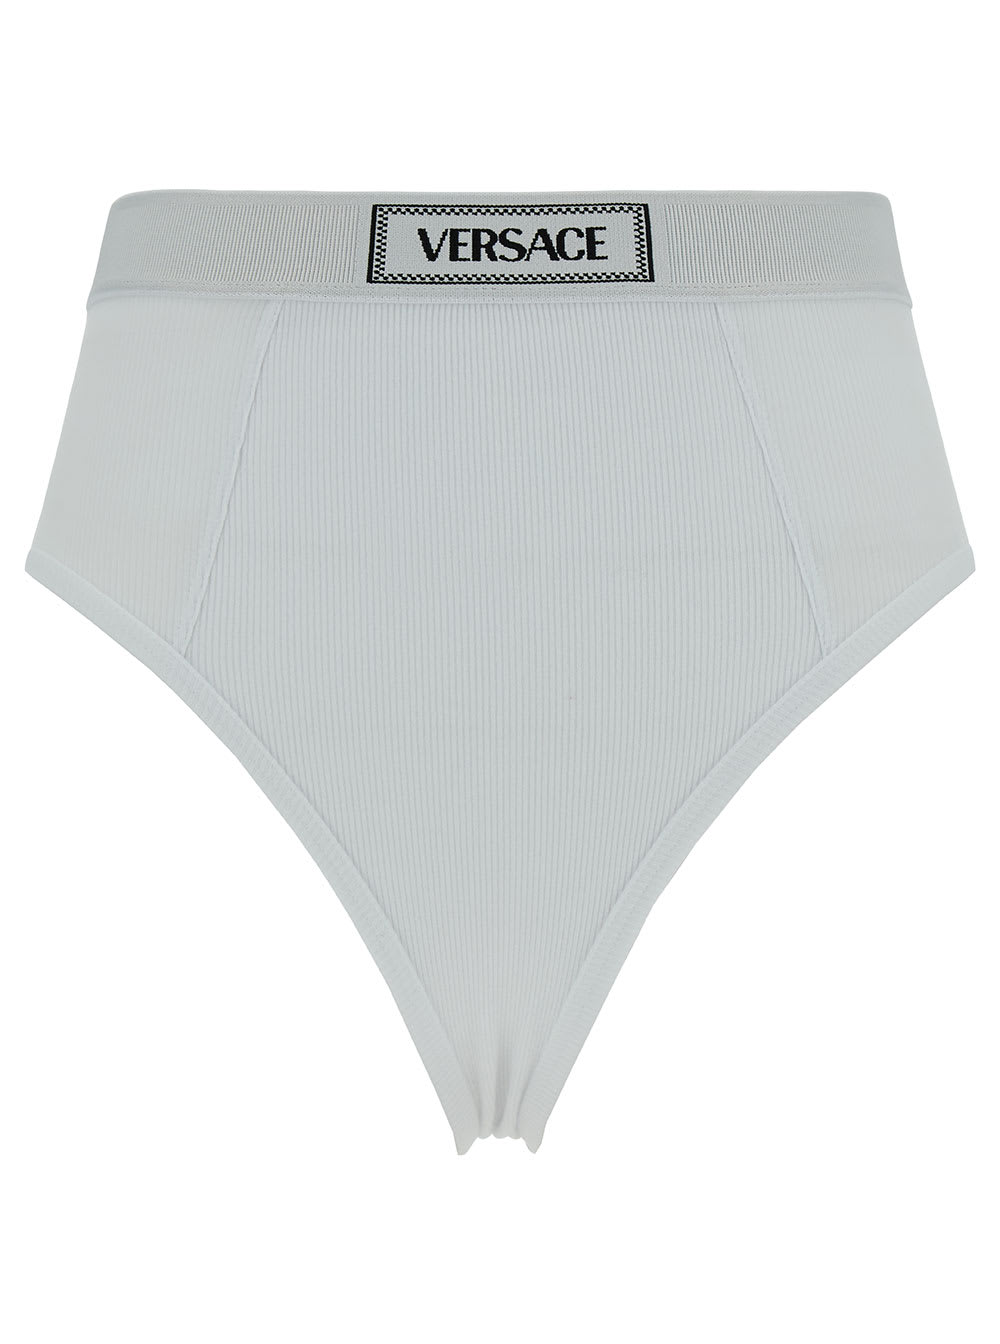 Versace Underwear Cotton Slip